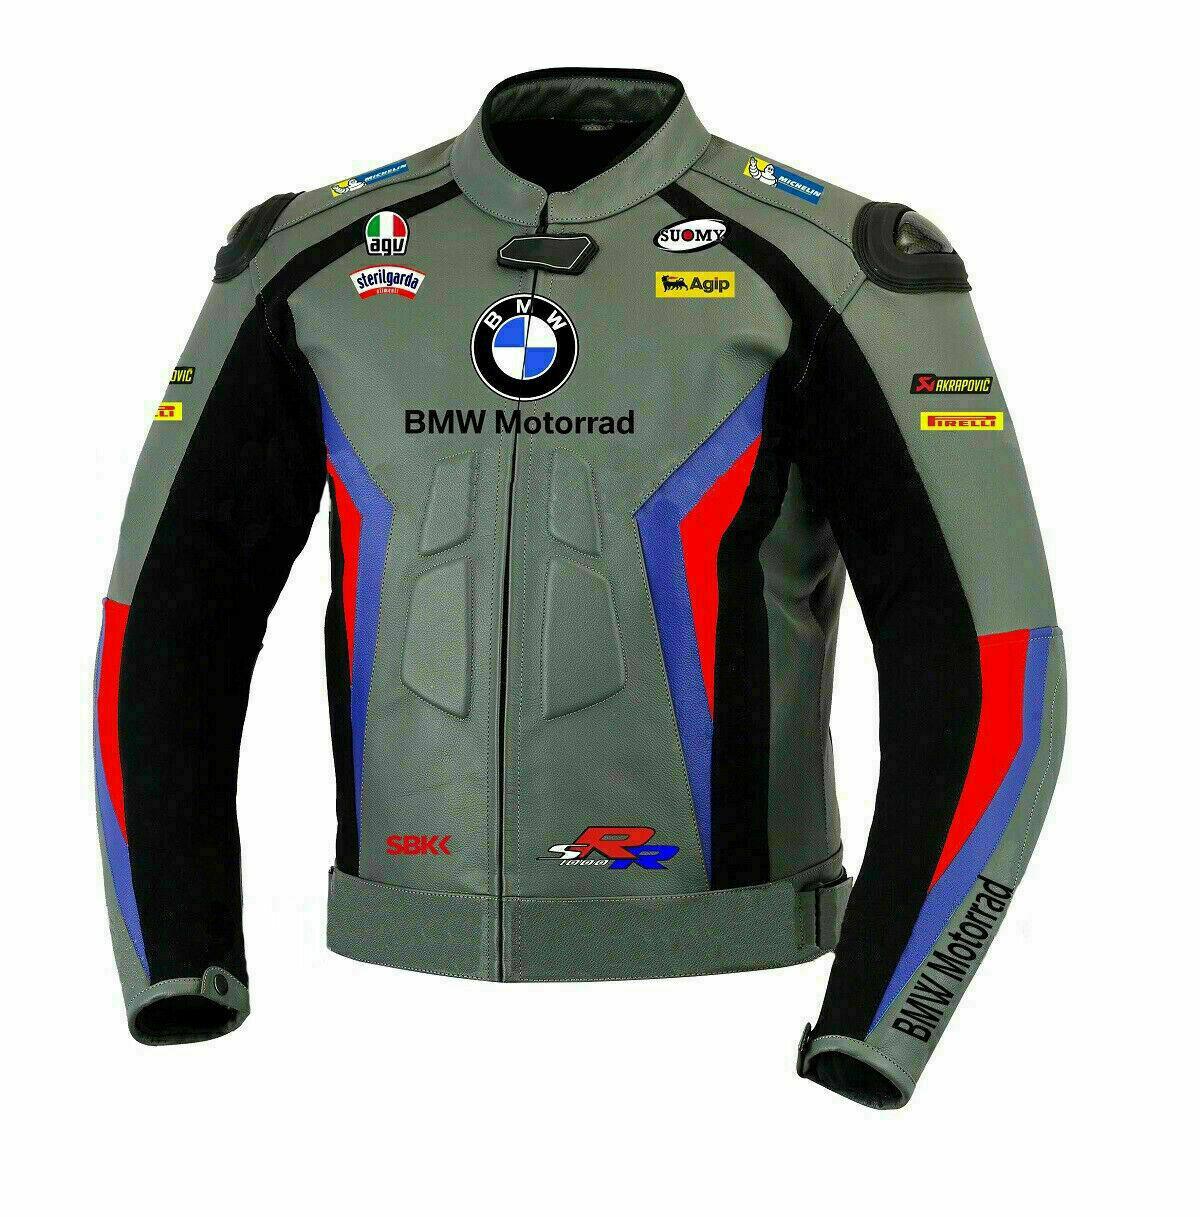 ZMJ-035 Racing Motorbike/Motorcycle Leather Jacket Custom Made Jacket For Bikers - ZEES MOTOR SPORTS